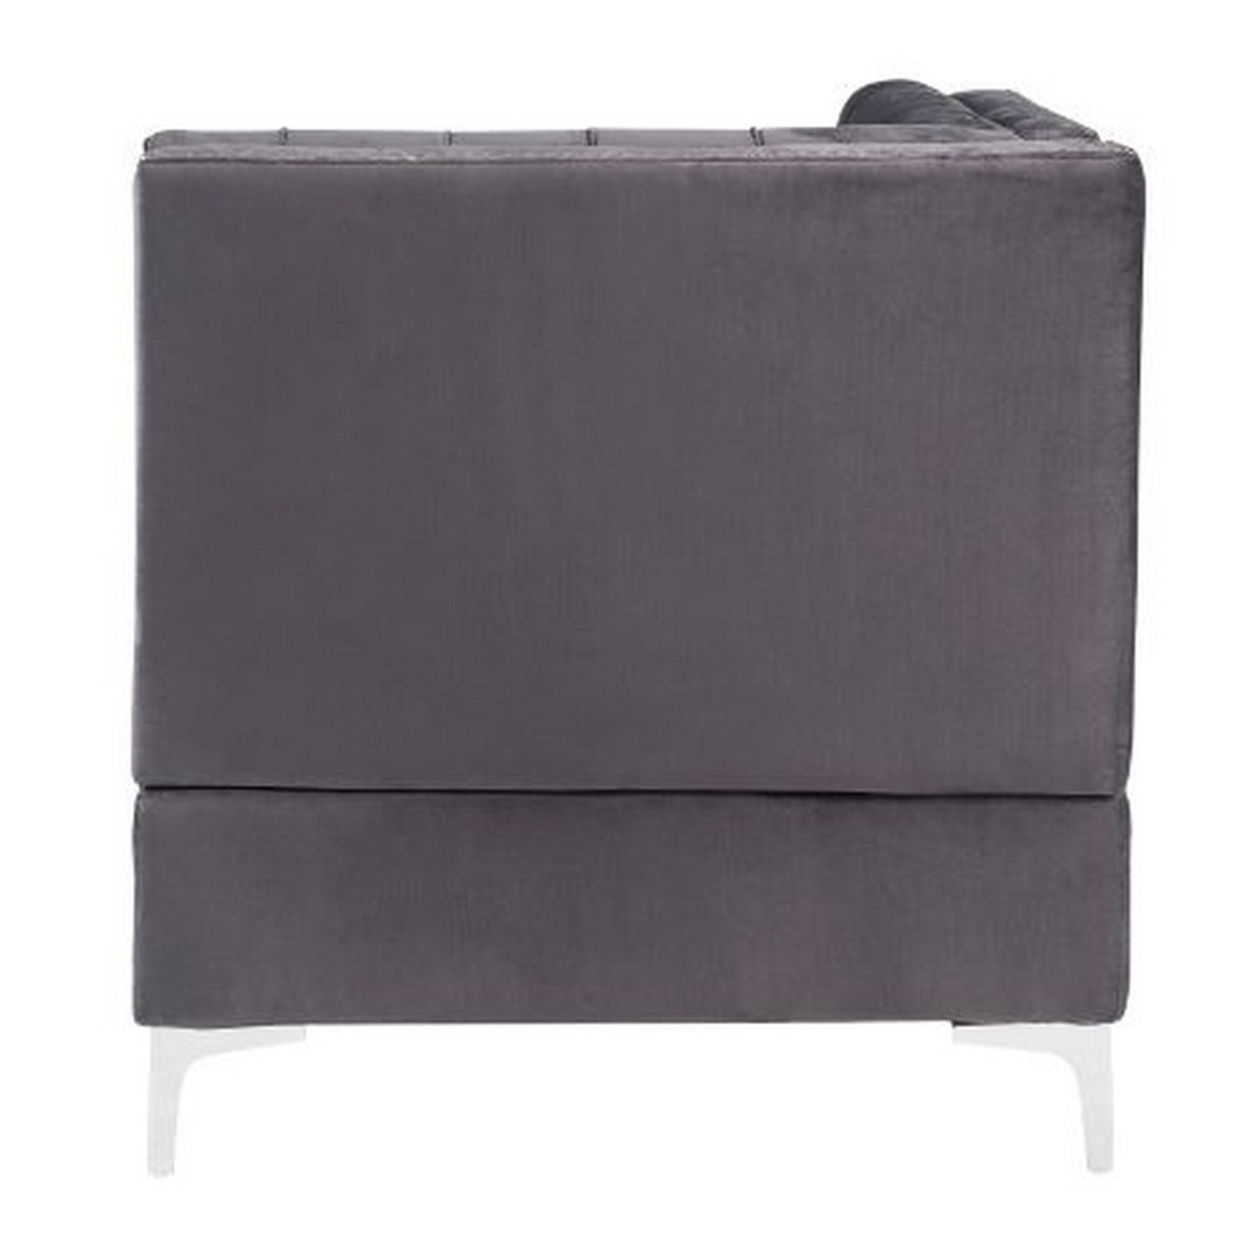 Corner Wedge With Velvet Upholstery And Metal Legs, Gray- Saltoro Sherpi